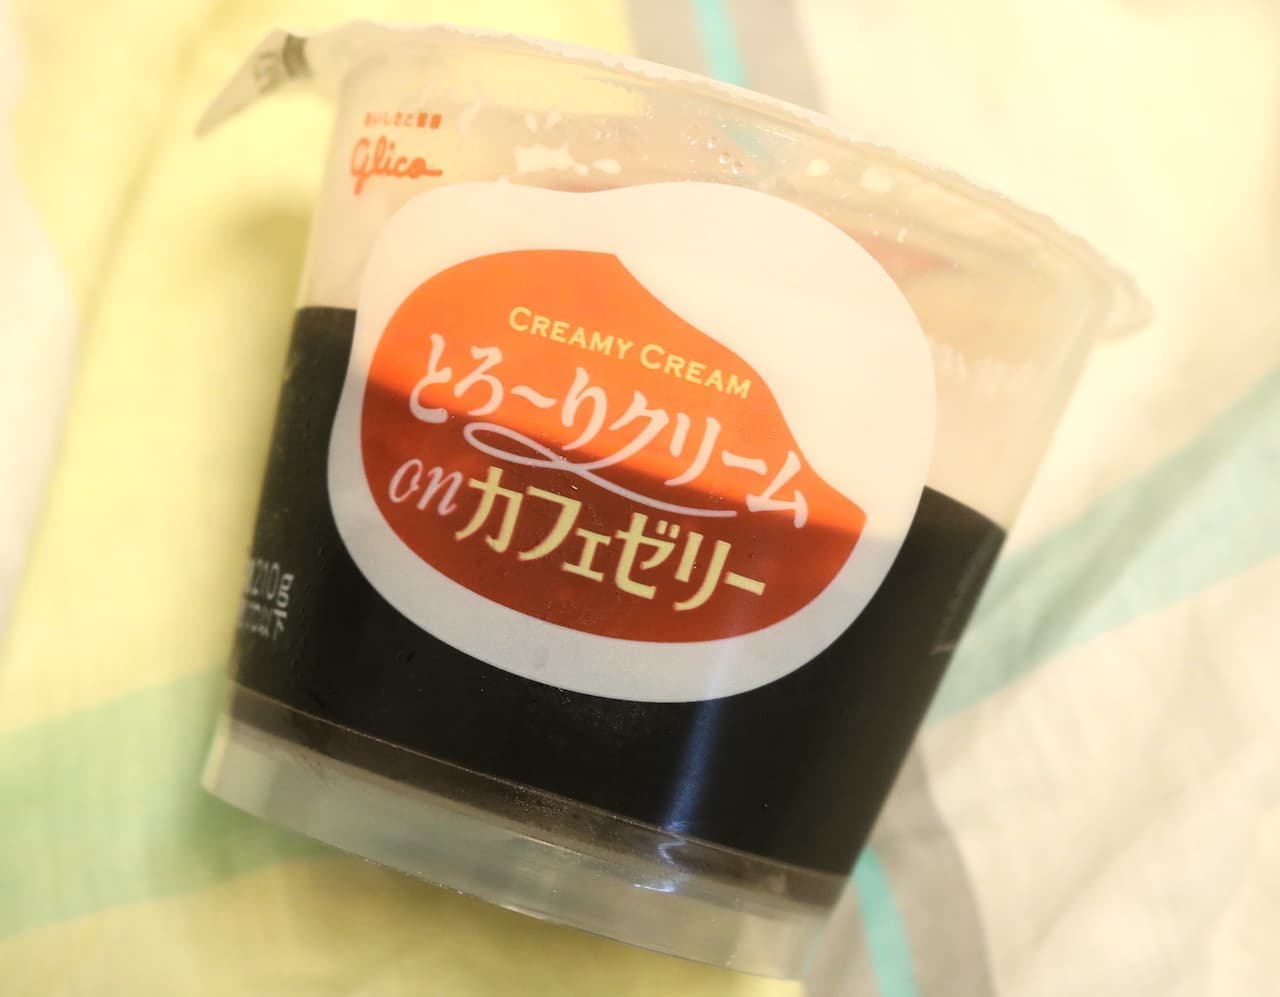 Ezaki Glico "Torori Cream on Cafe Jelly"